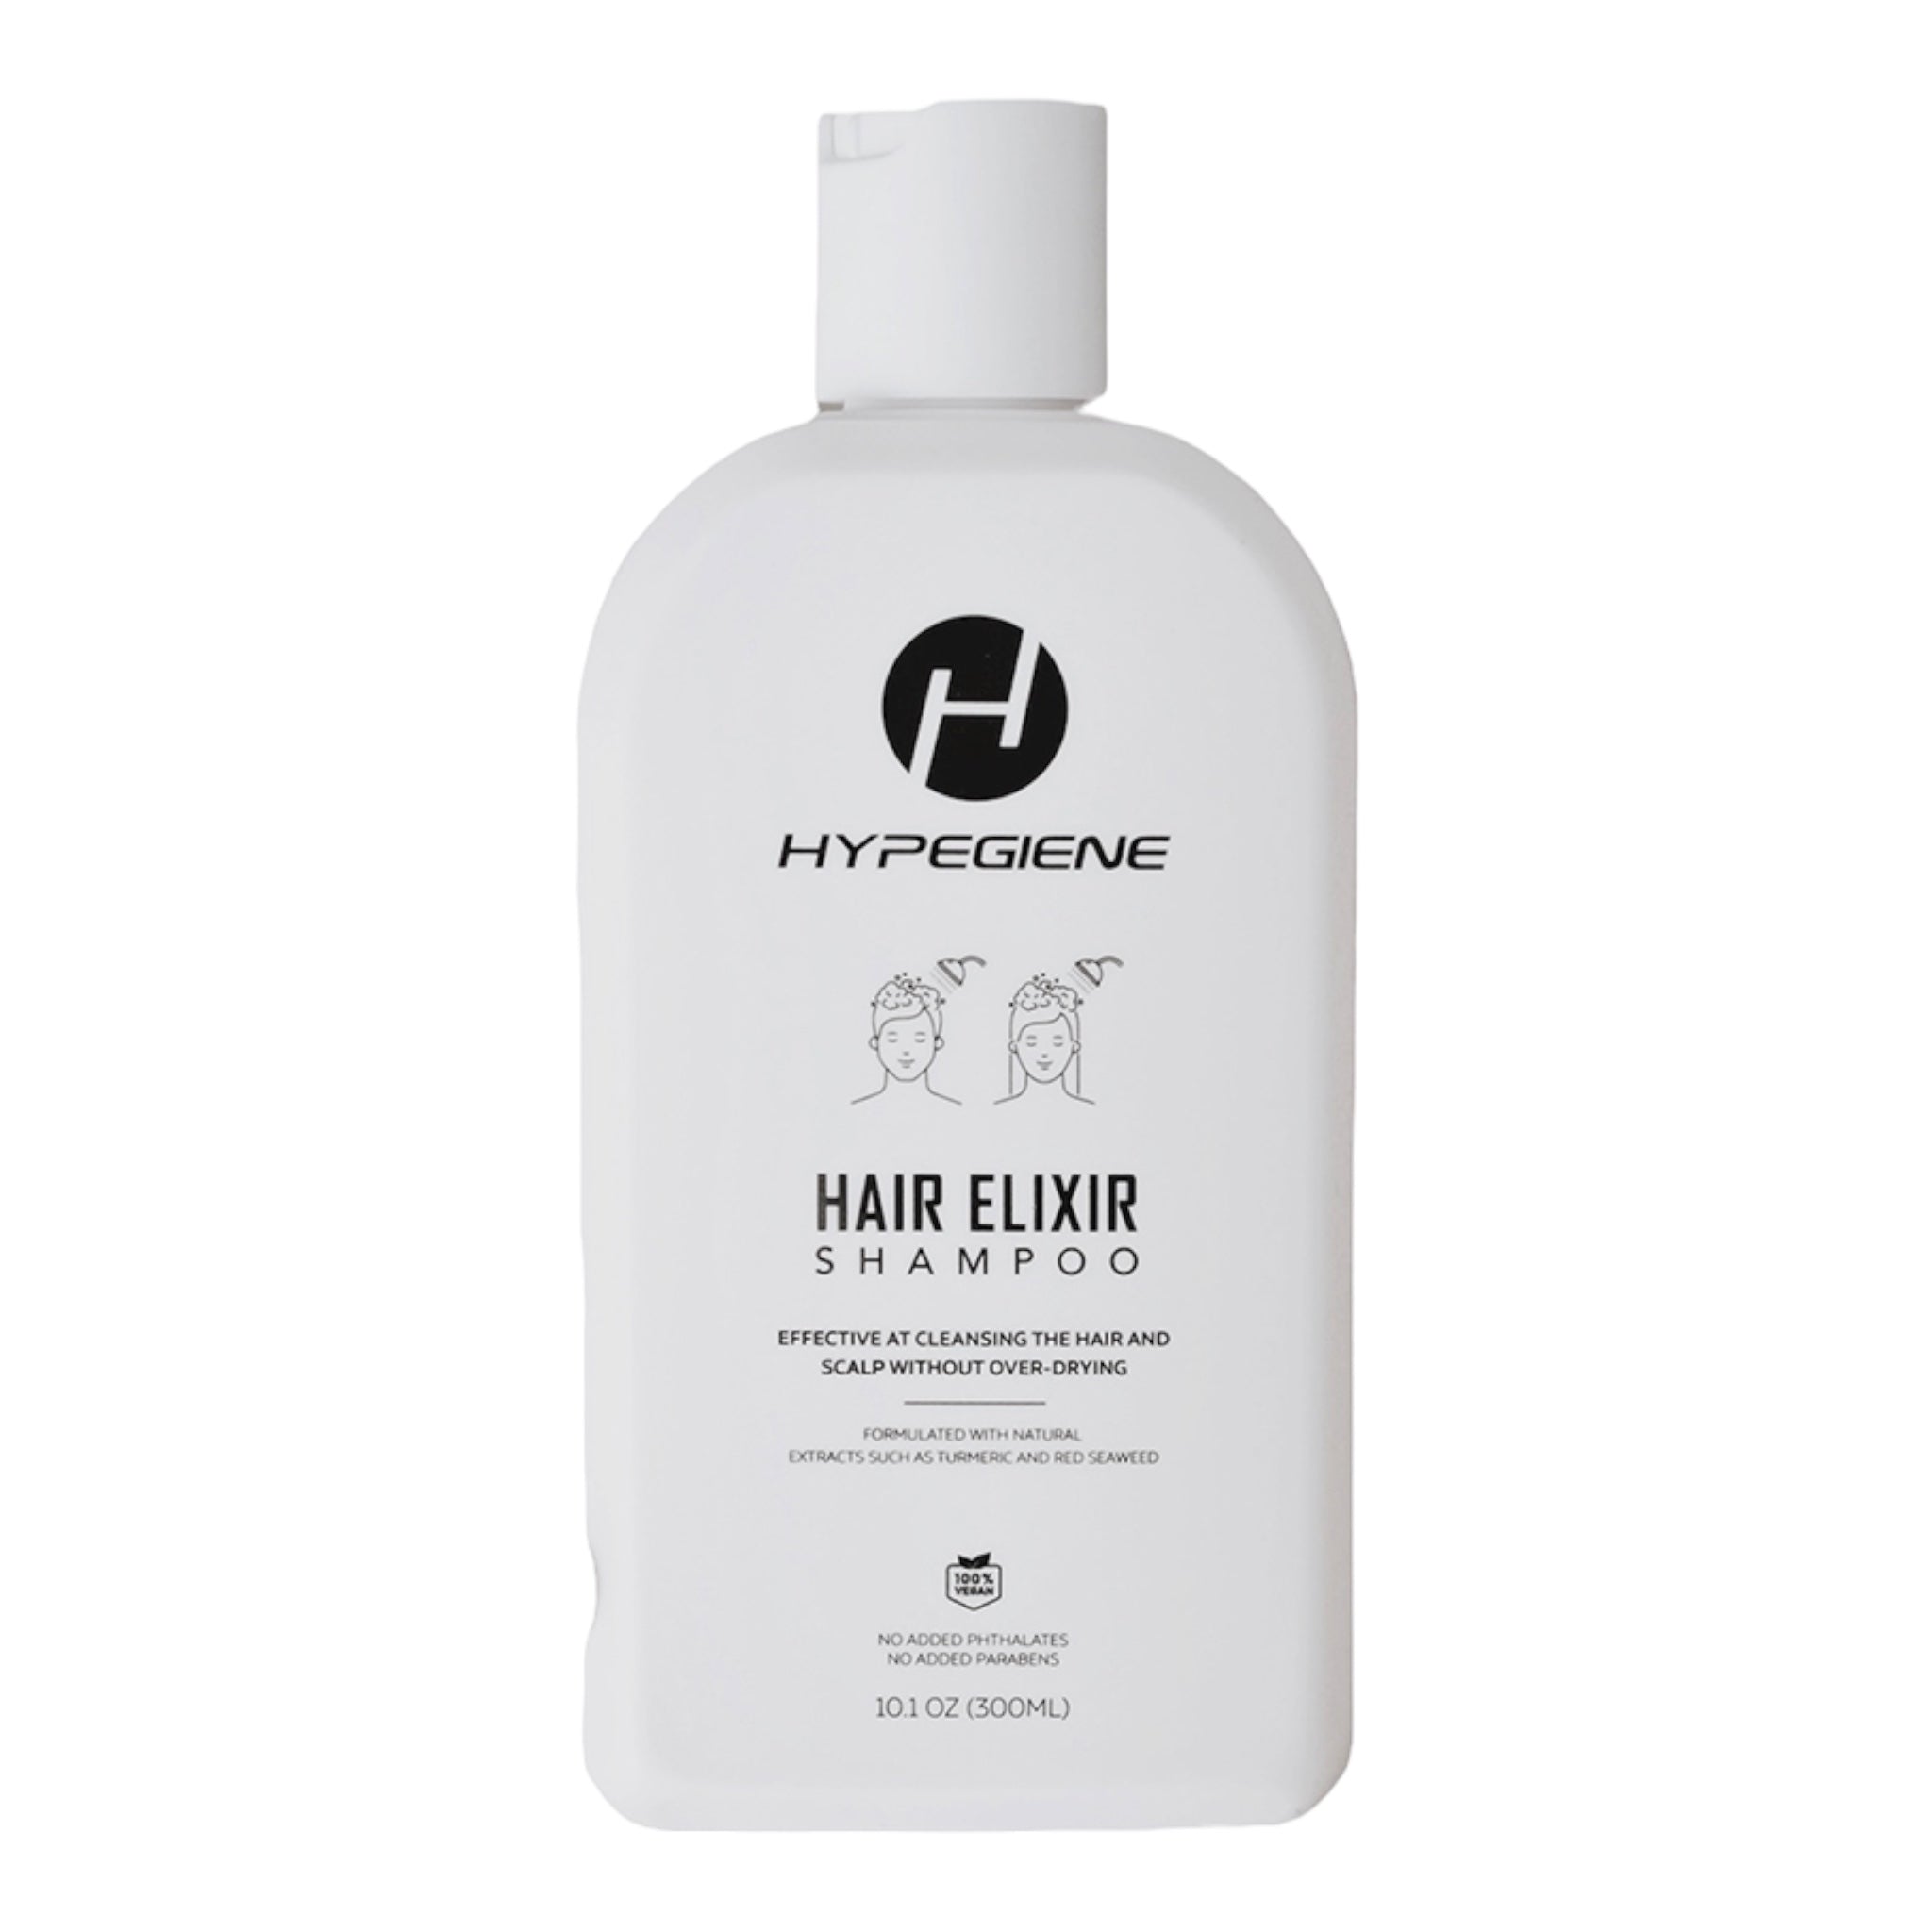 Hypegiene Hair Elixir Shampoo